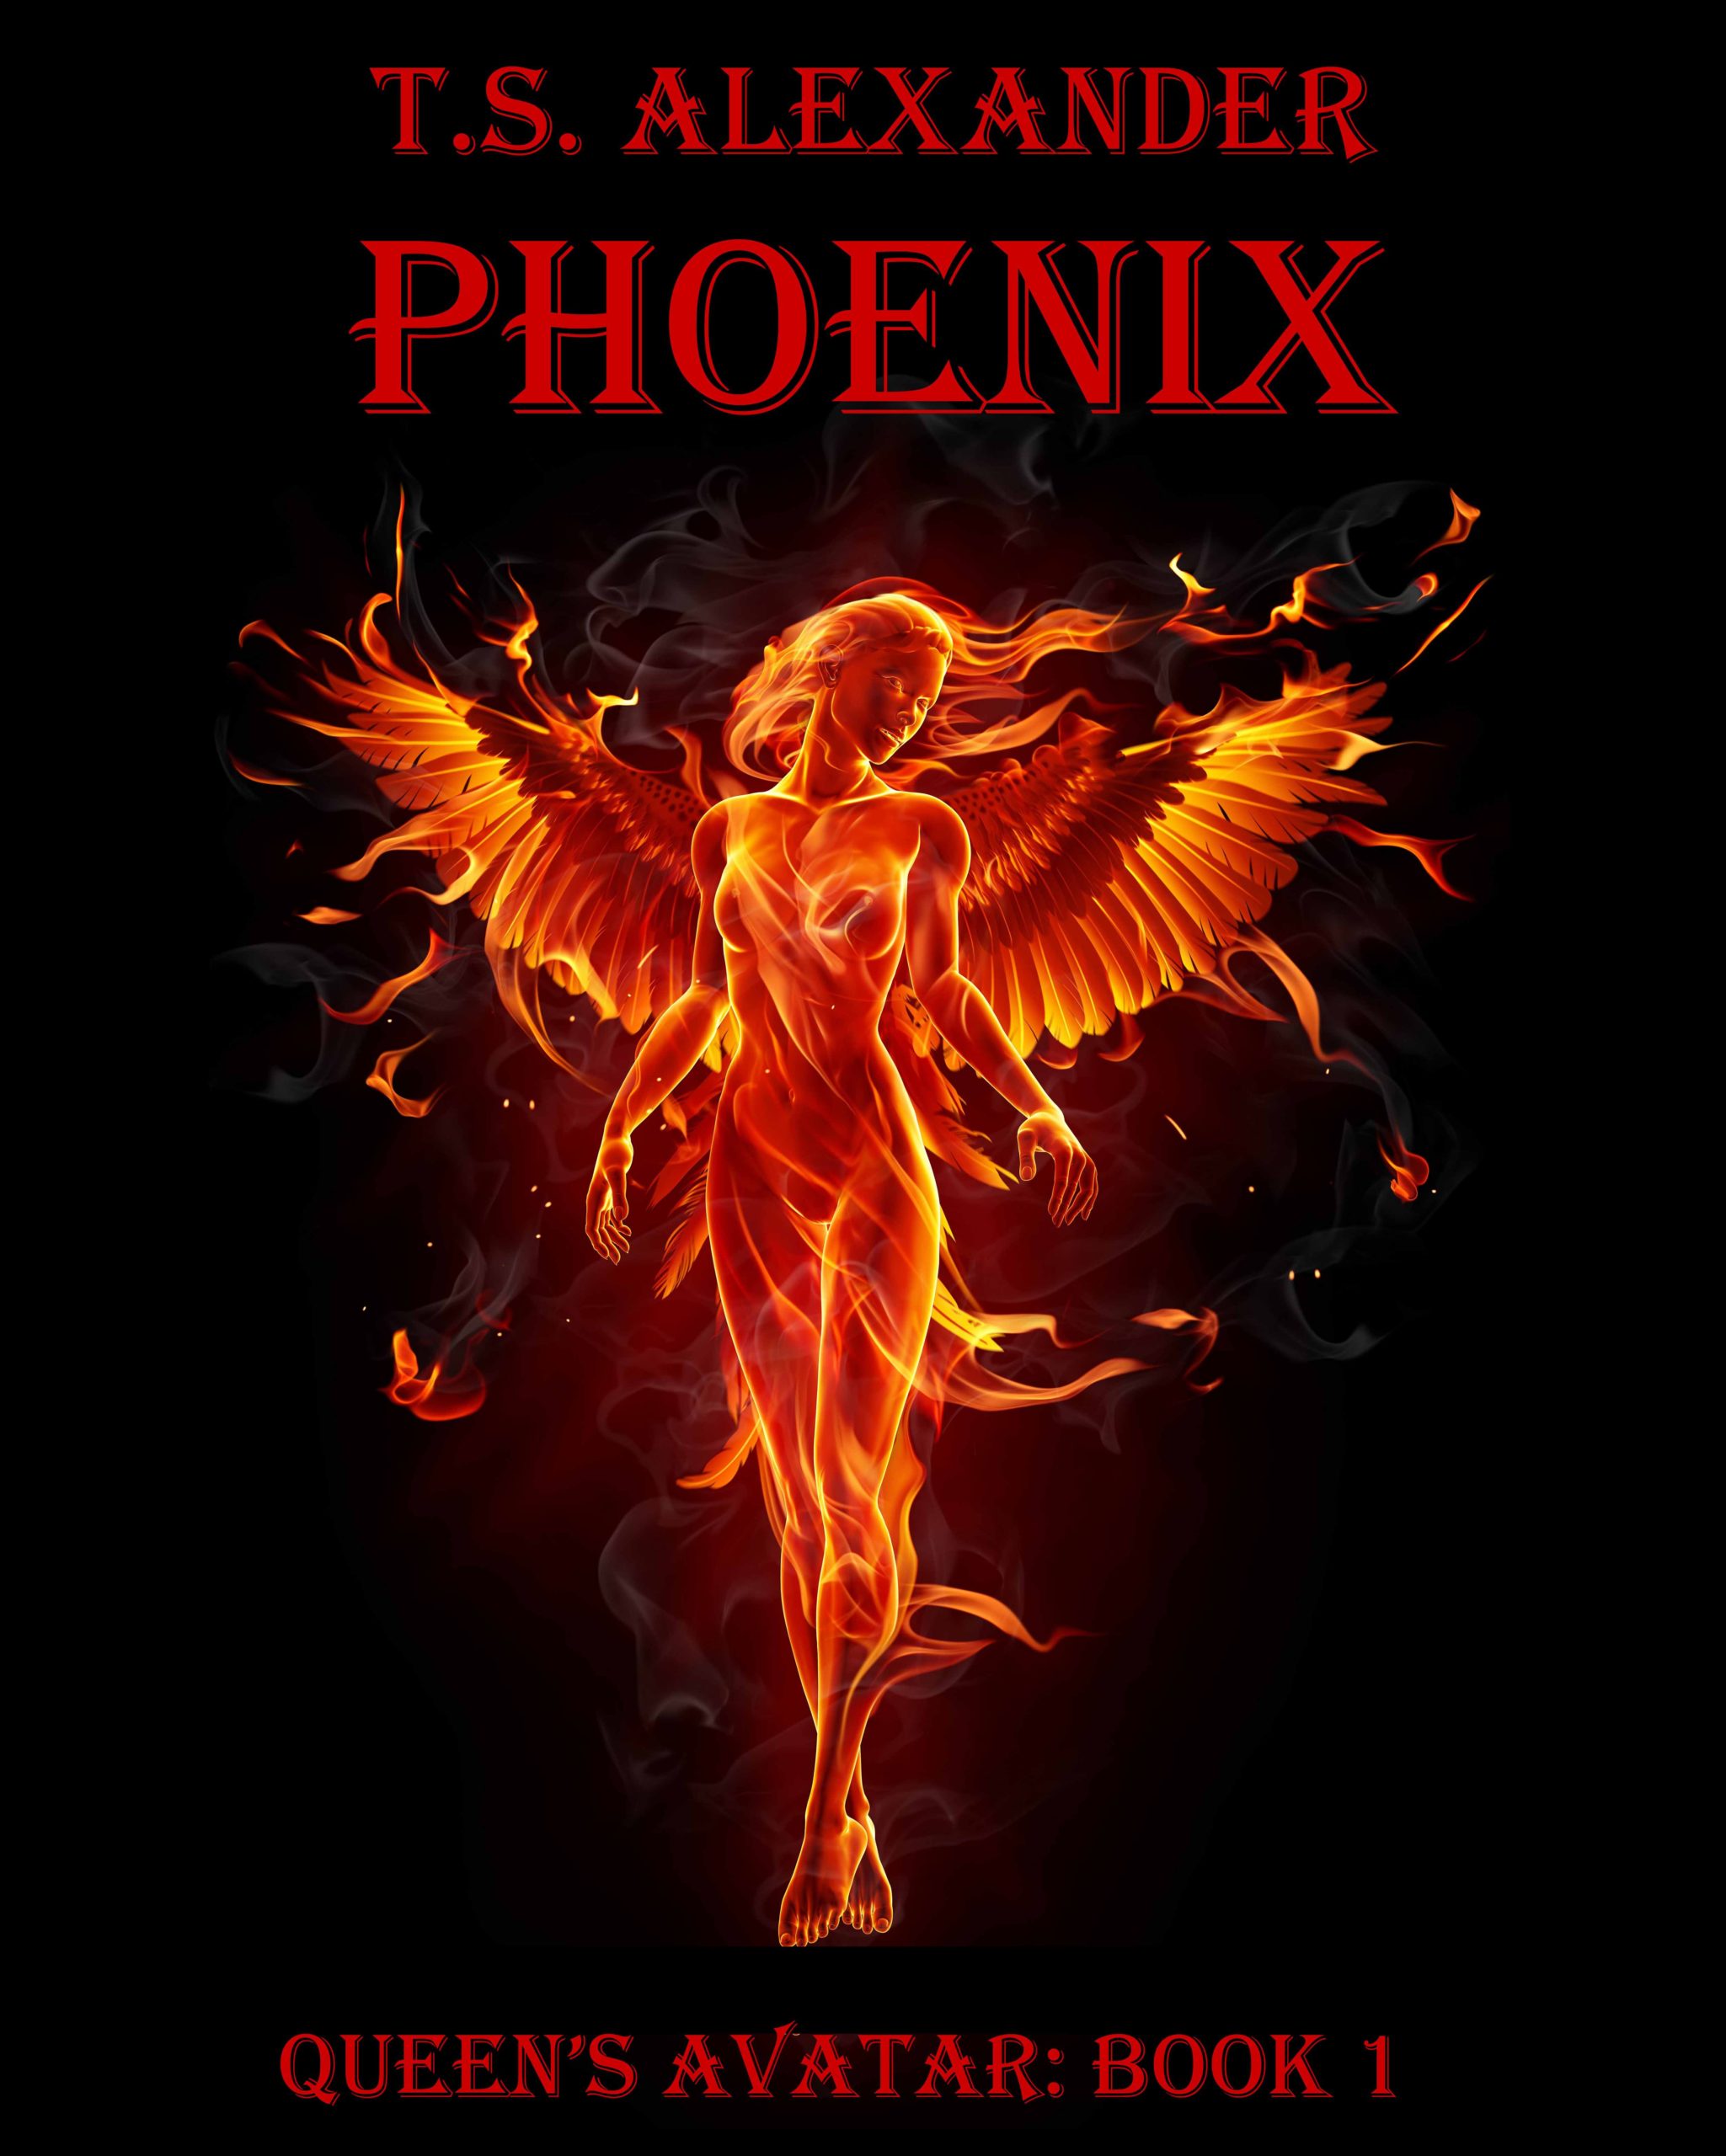 FREE: PHOENIX by T.S. ALEXANDER